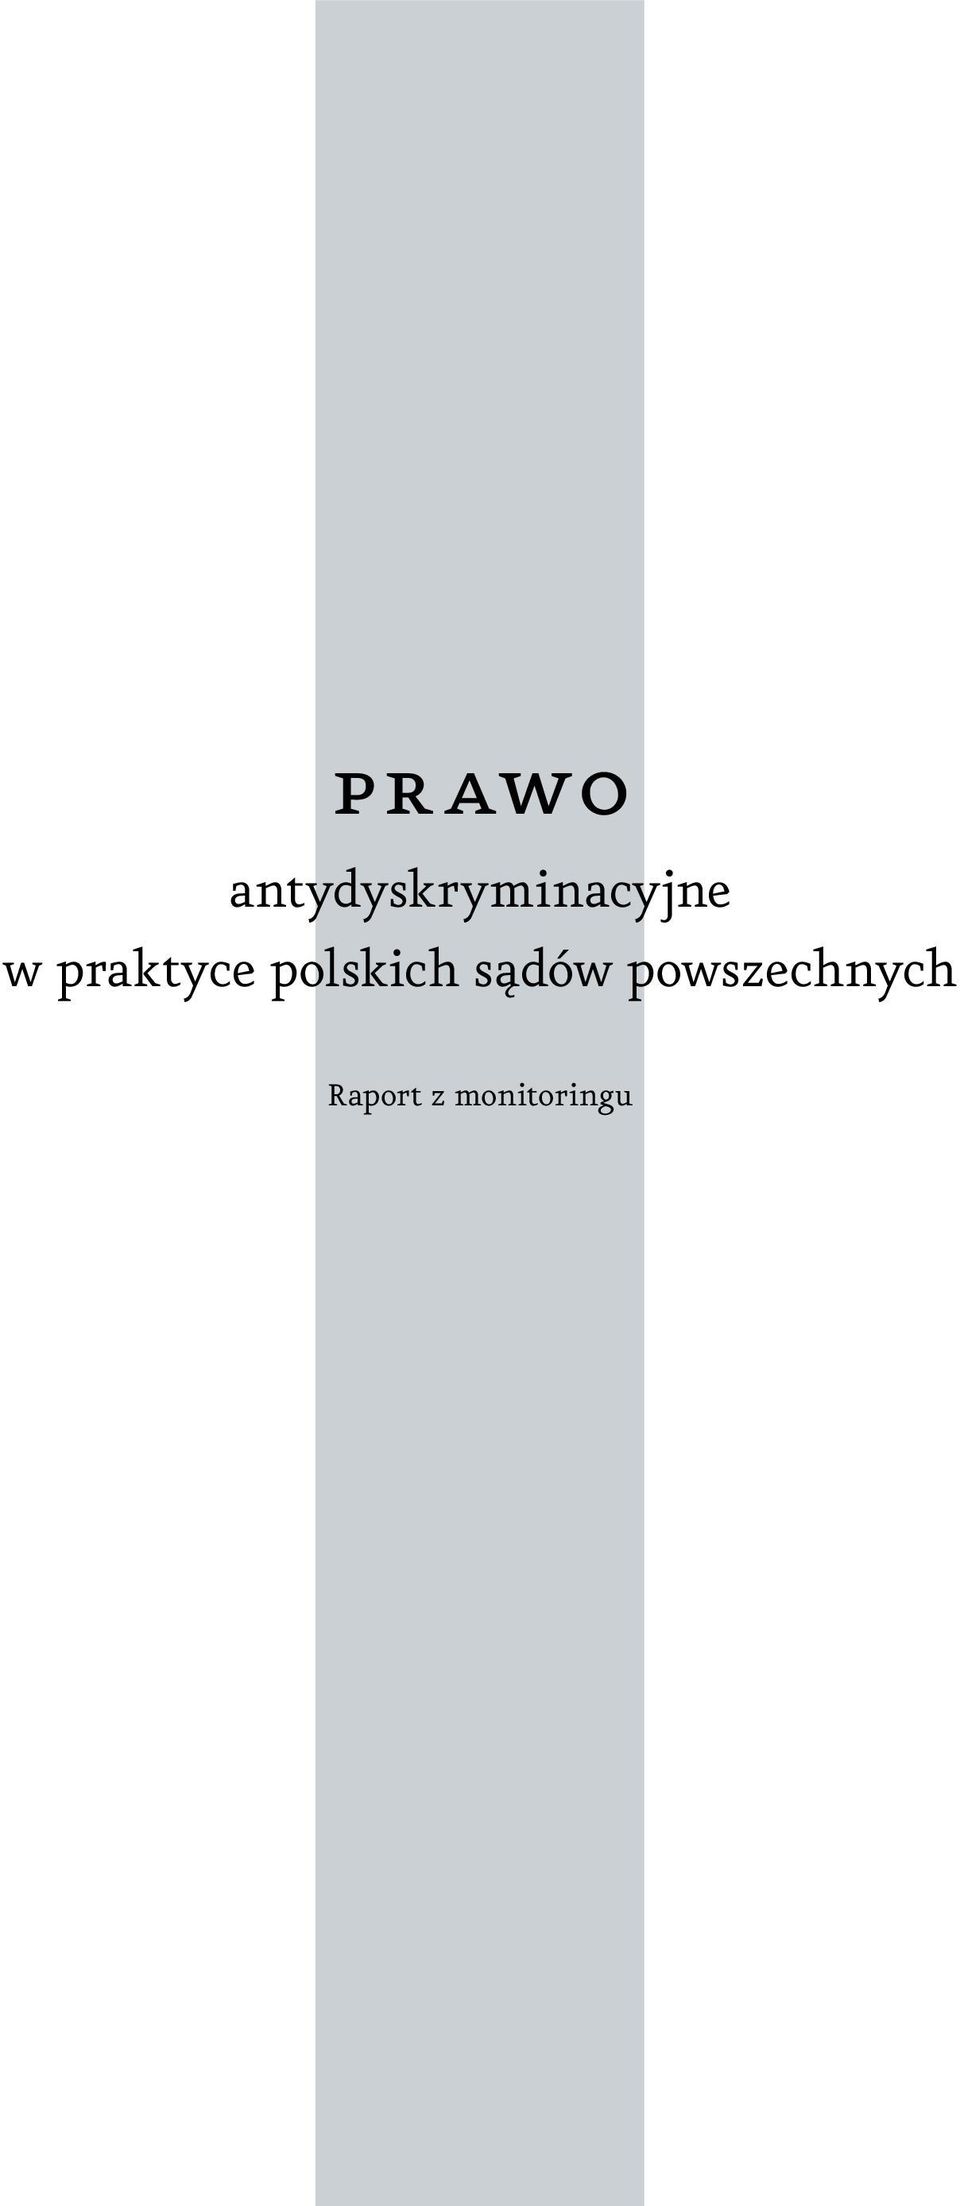 praktyce polskich